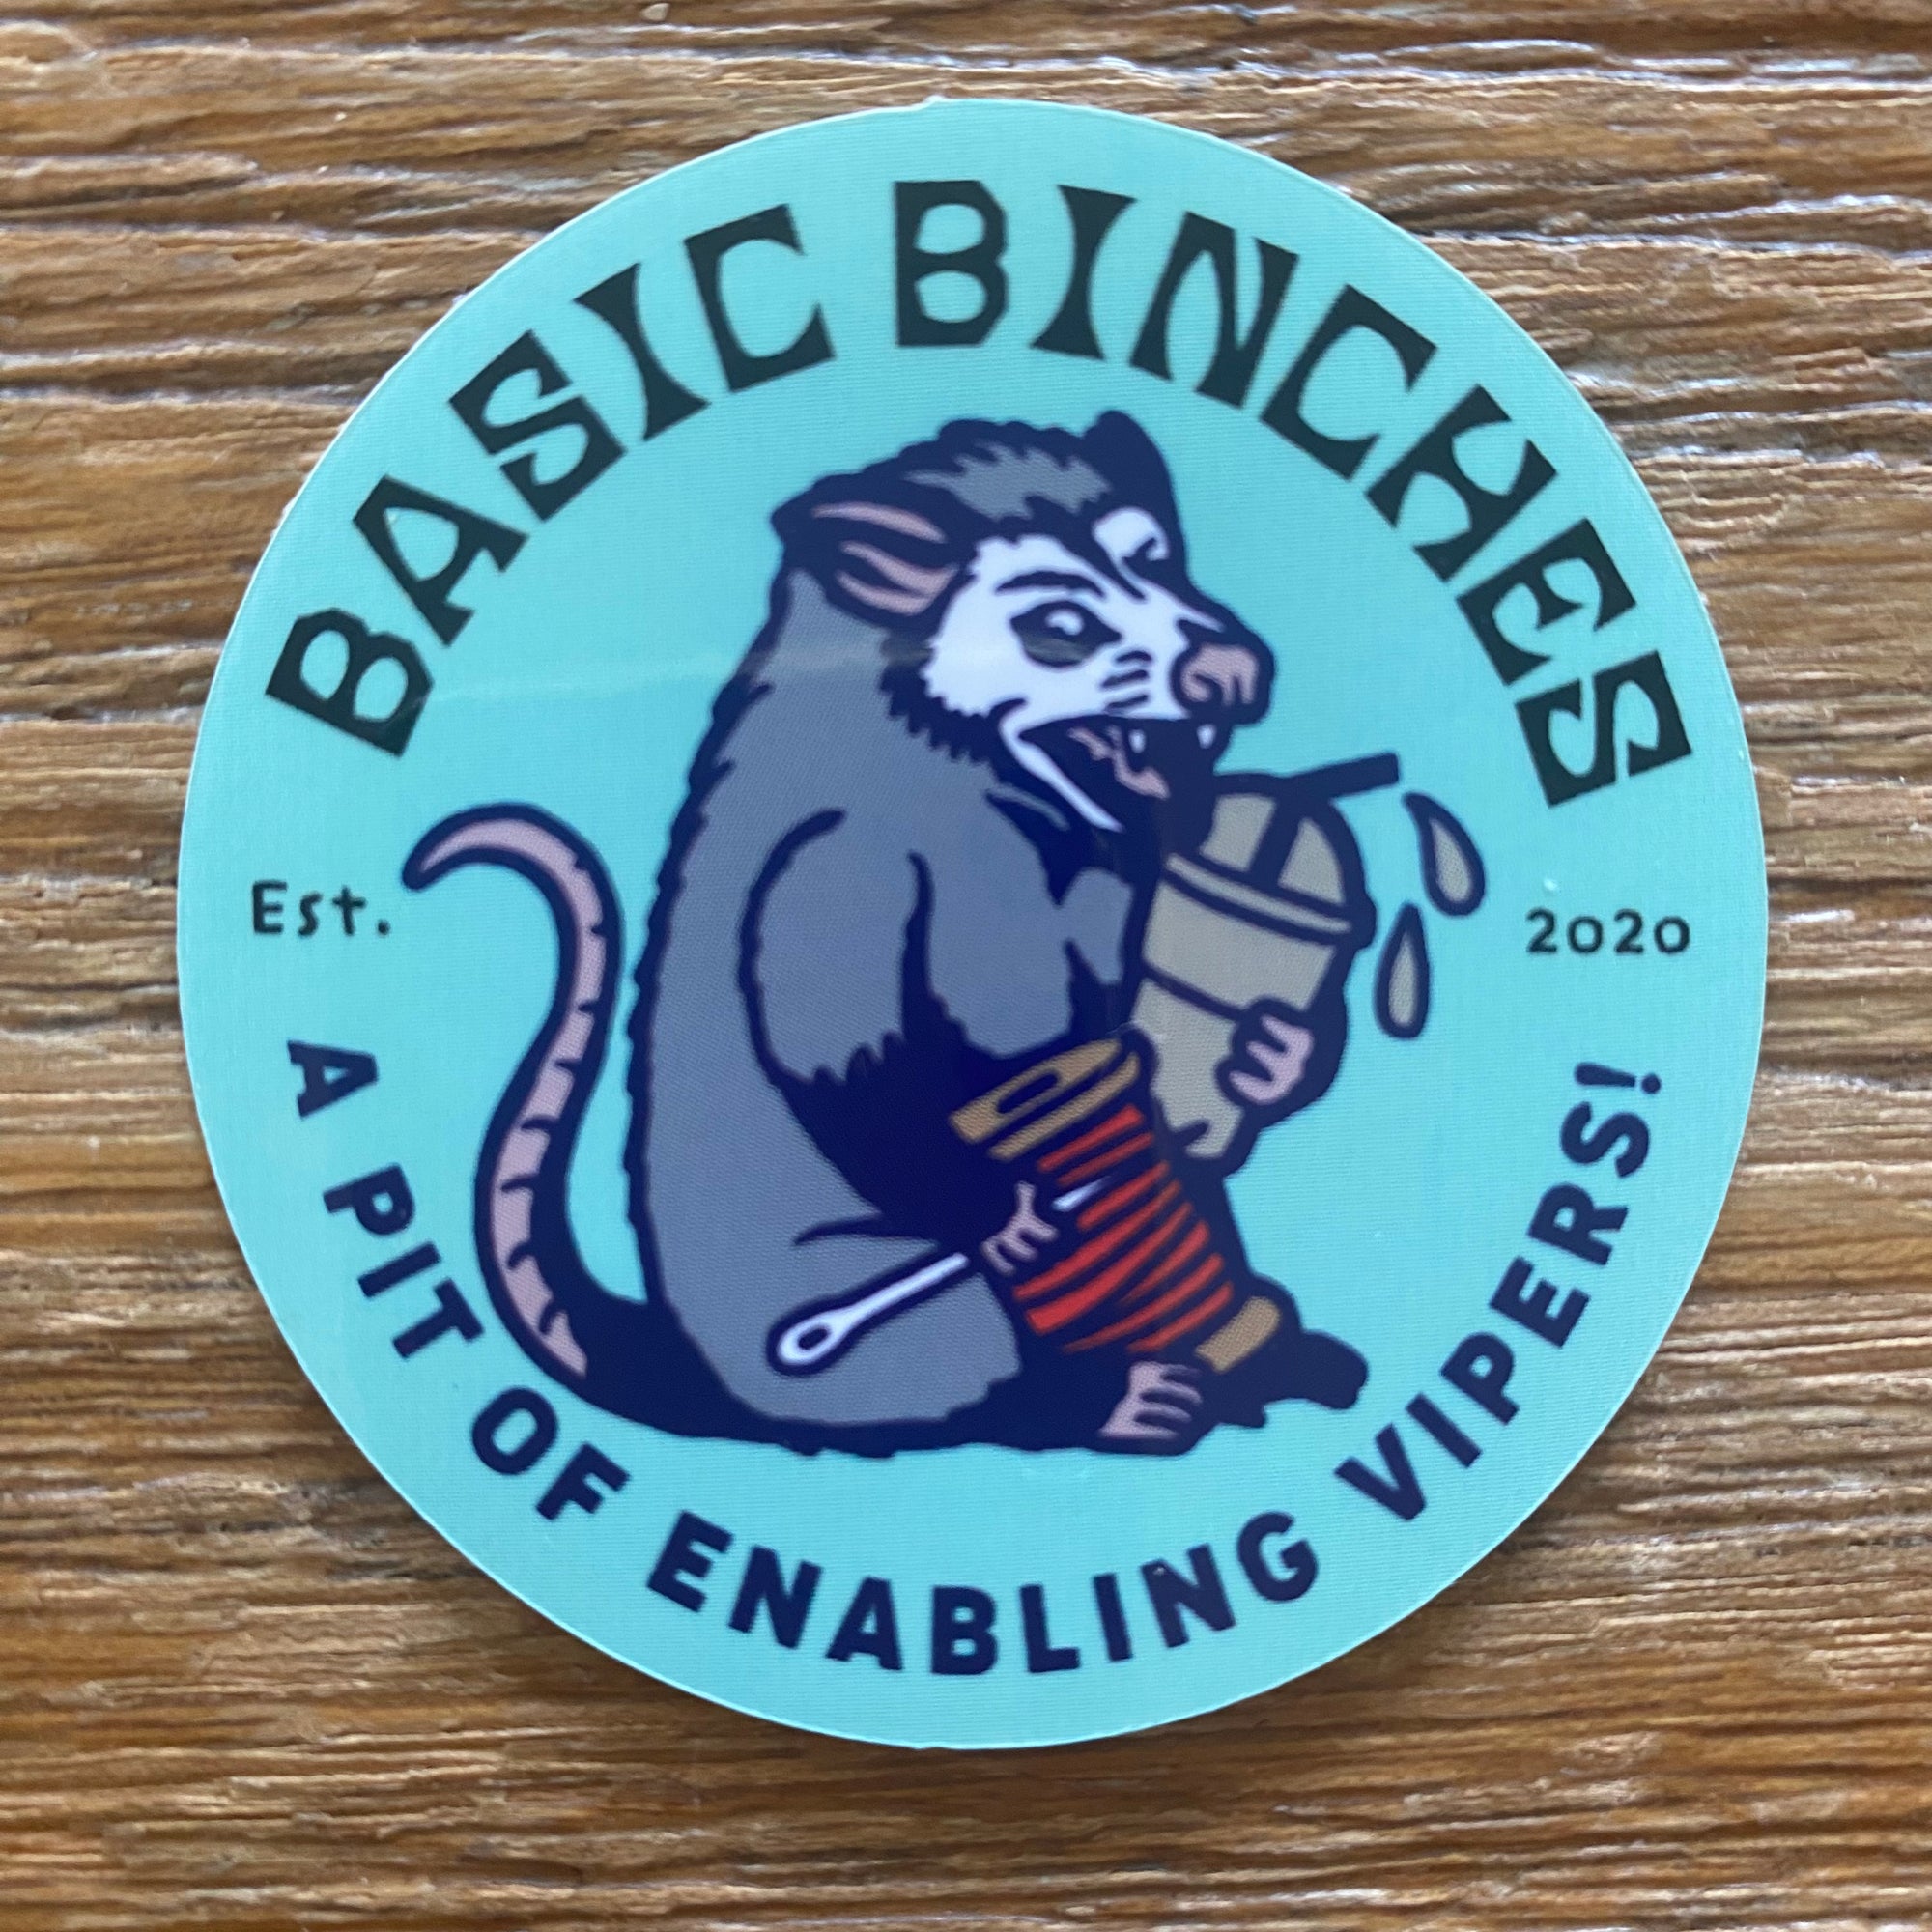 BASIC BINCHES Sticker